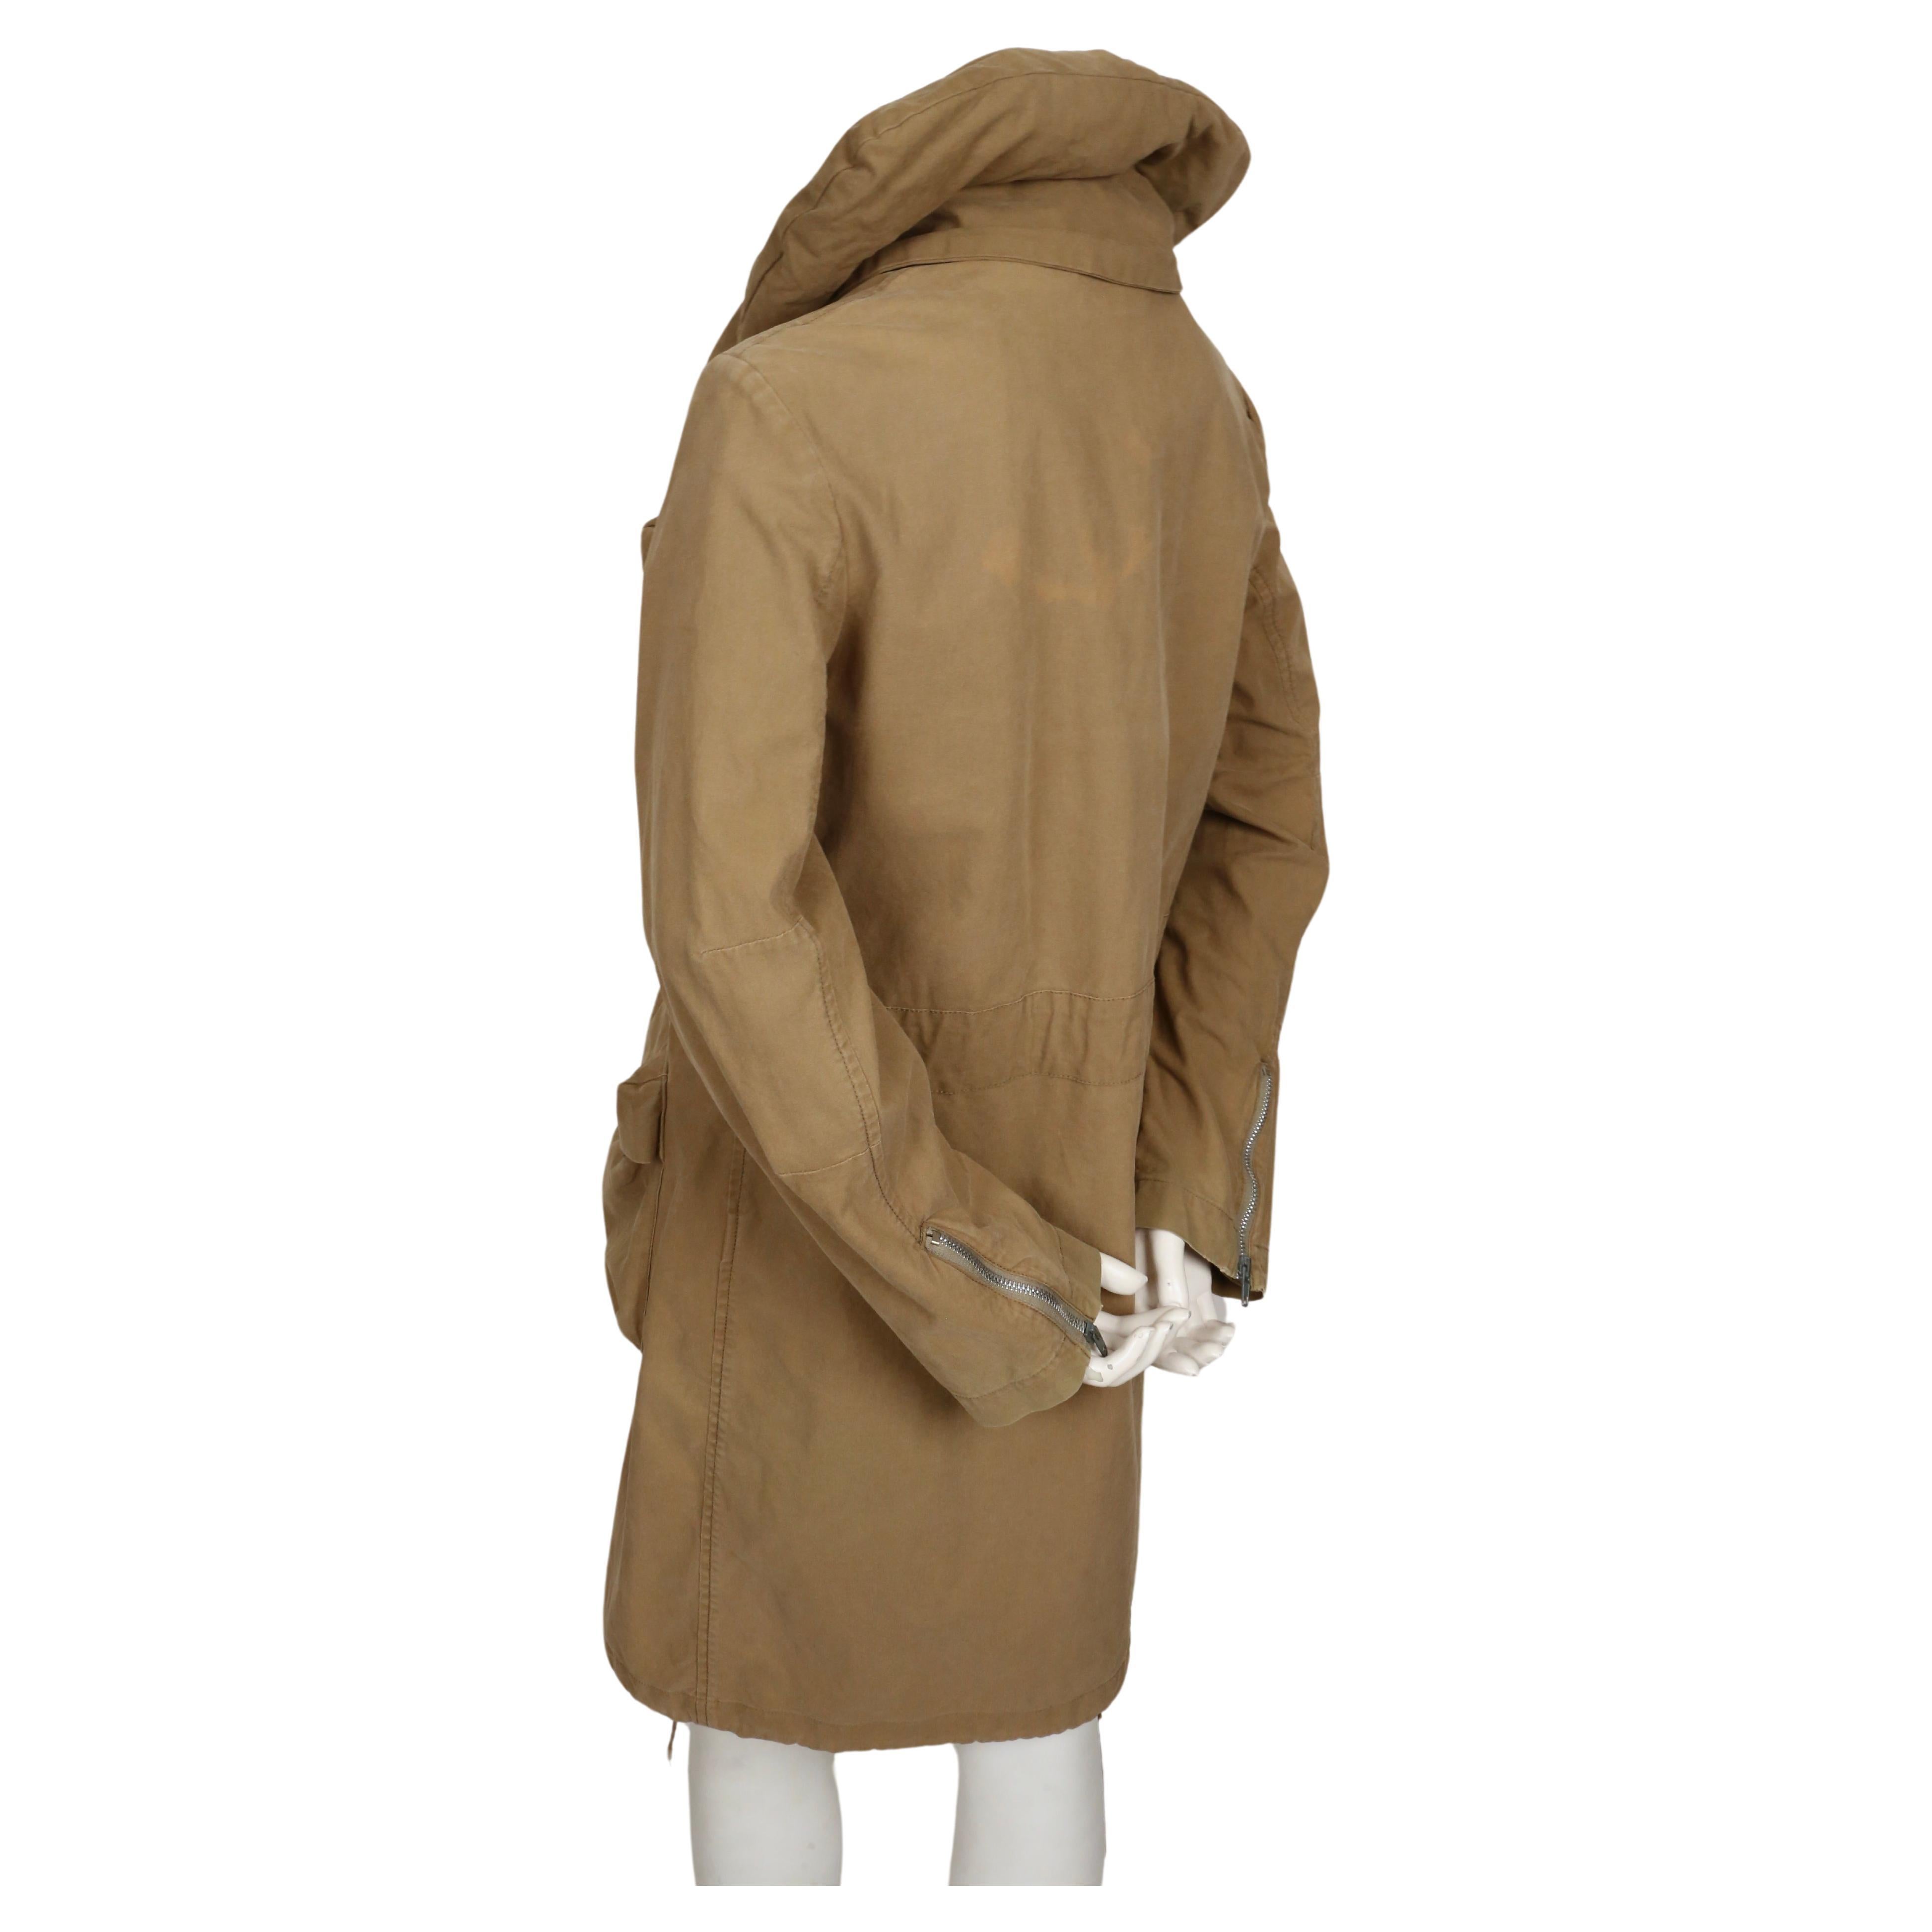 1999 HELMUT LANG vintage parka coat with padded collar & bondage straps  For Sale 1